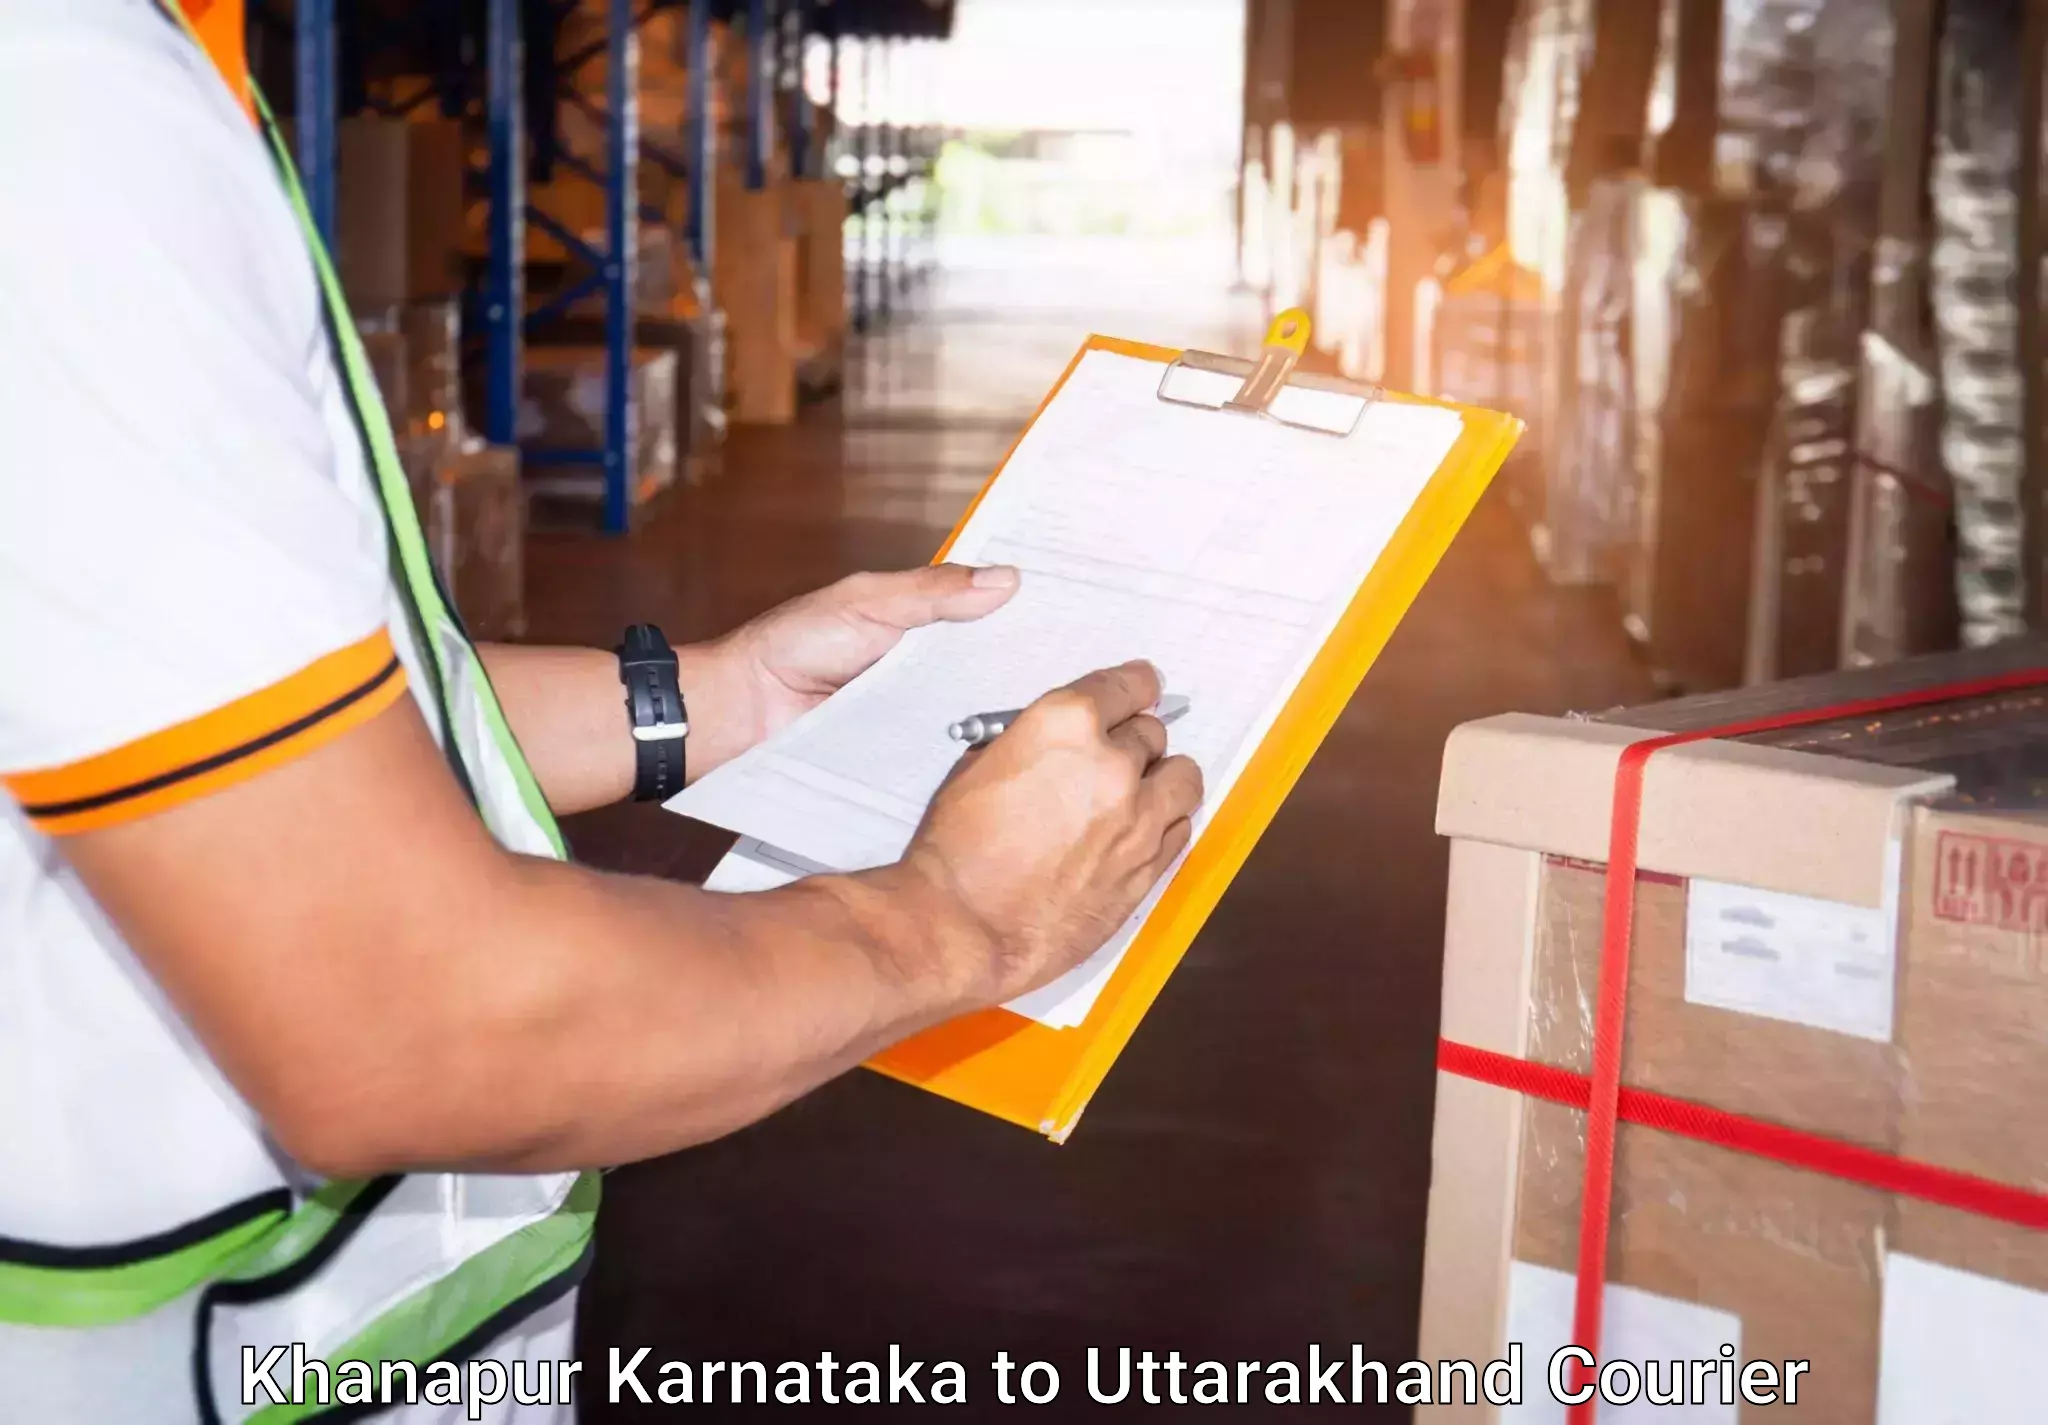 Budget-friendly baggage courier Khanapur Karnataka to Nainital